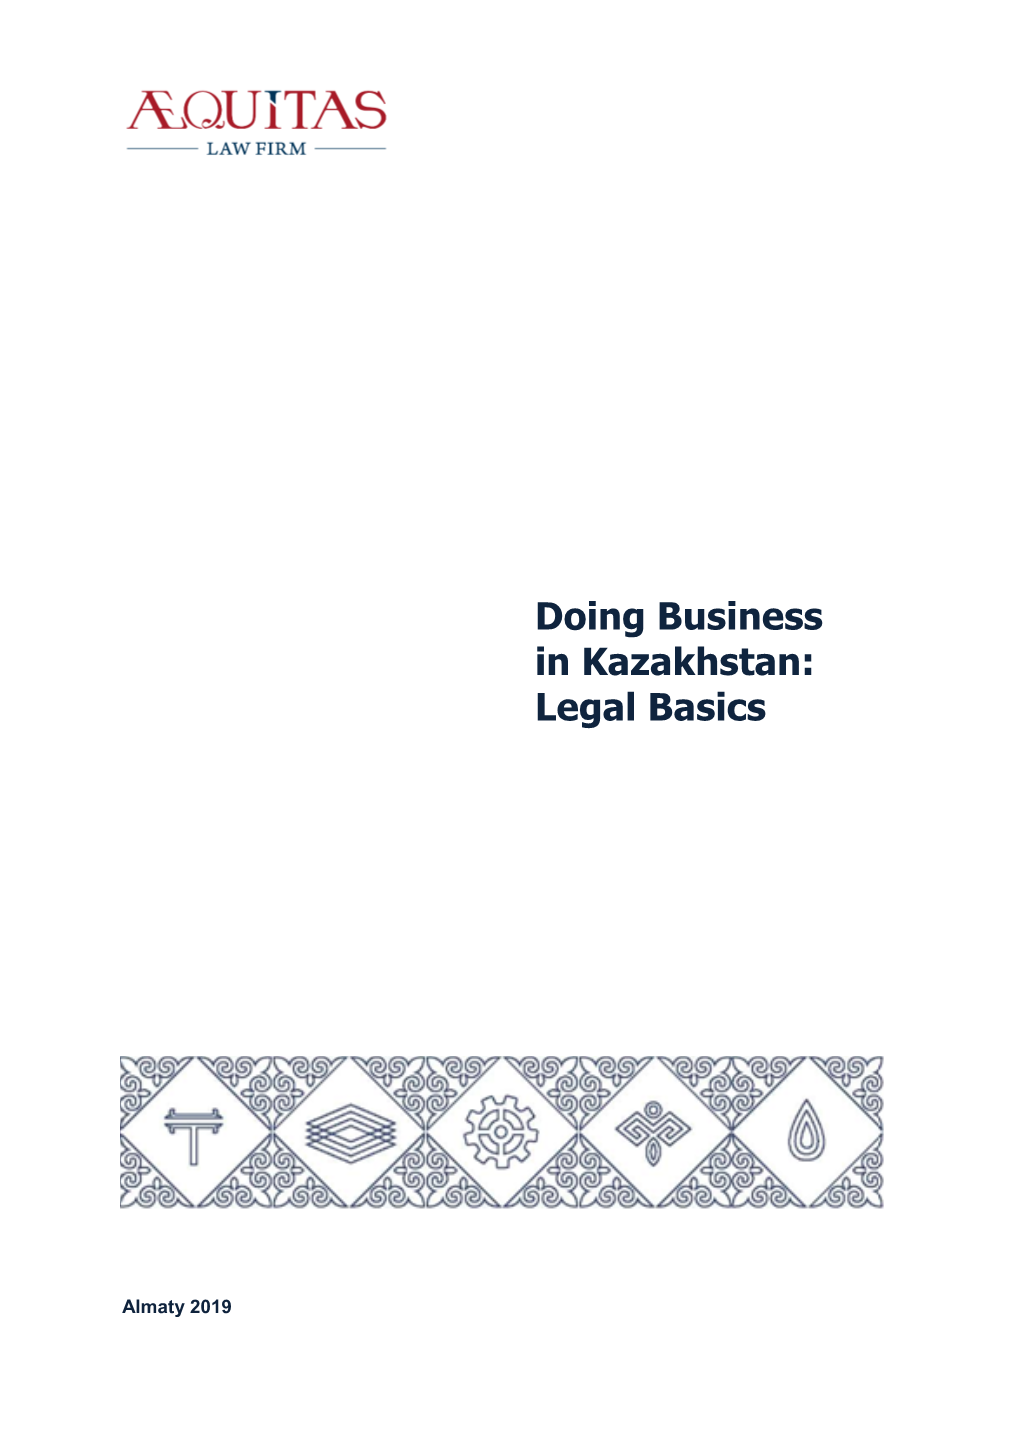 Doing Business in Kazakhstan: Legal Basics